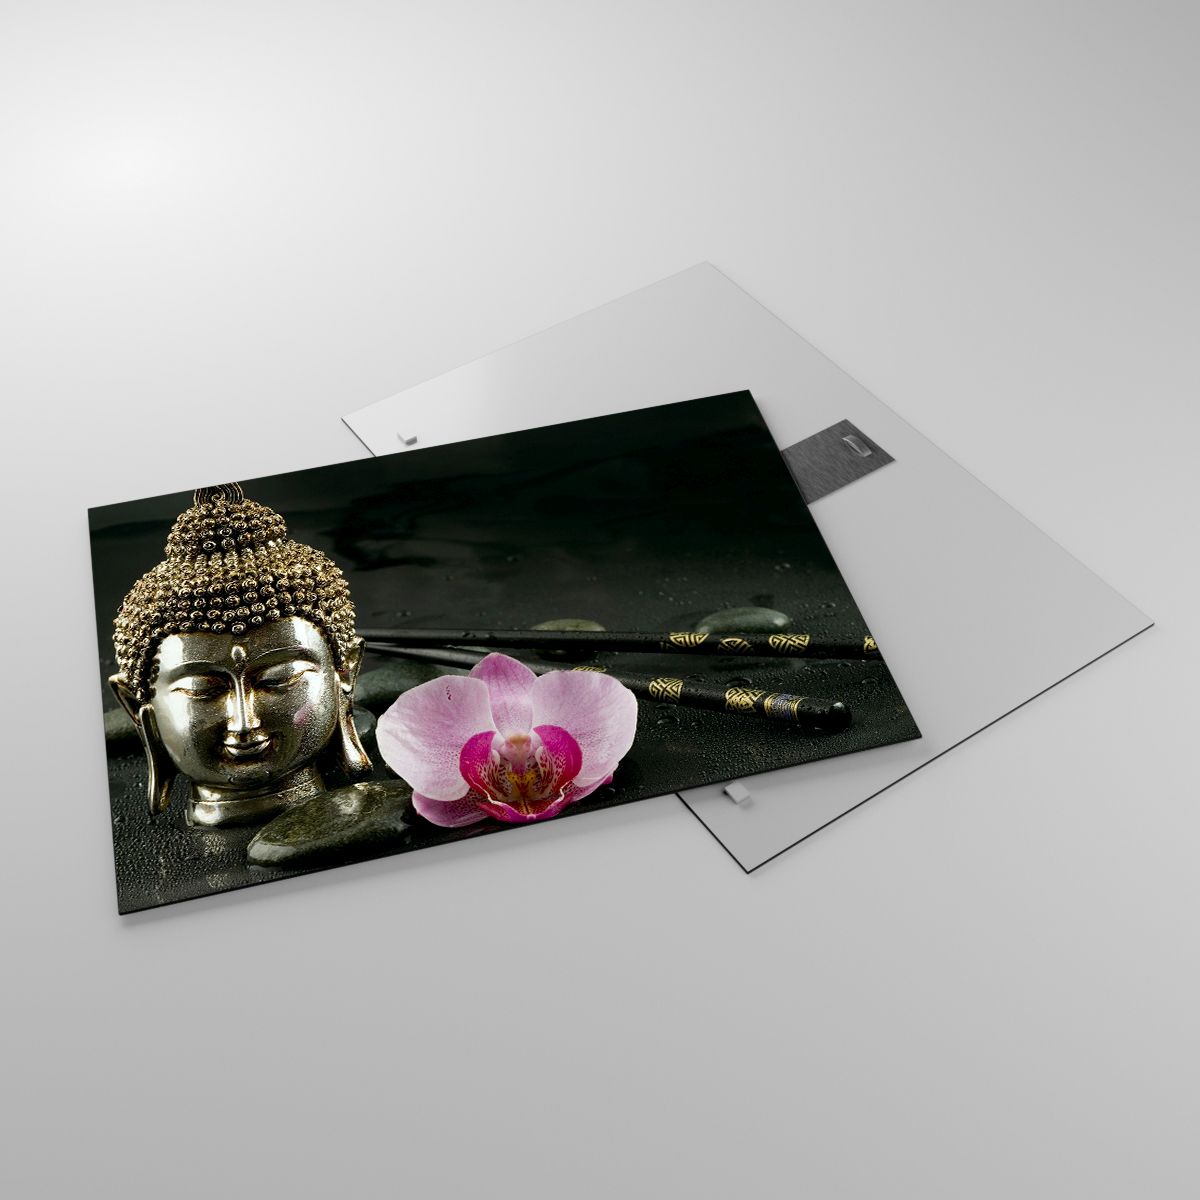 Glasbild Buddha, Glasbild Religion, Glasbild Glauben, Glasbild Blume, Glasbild Orchidee